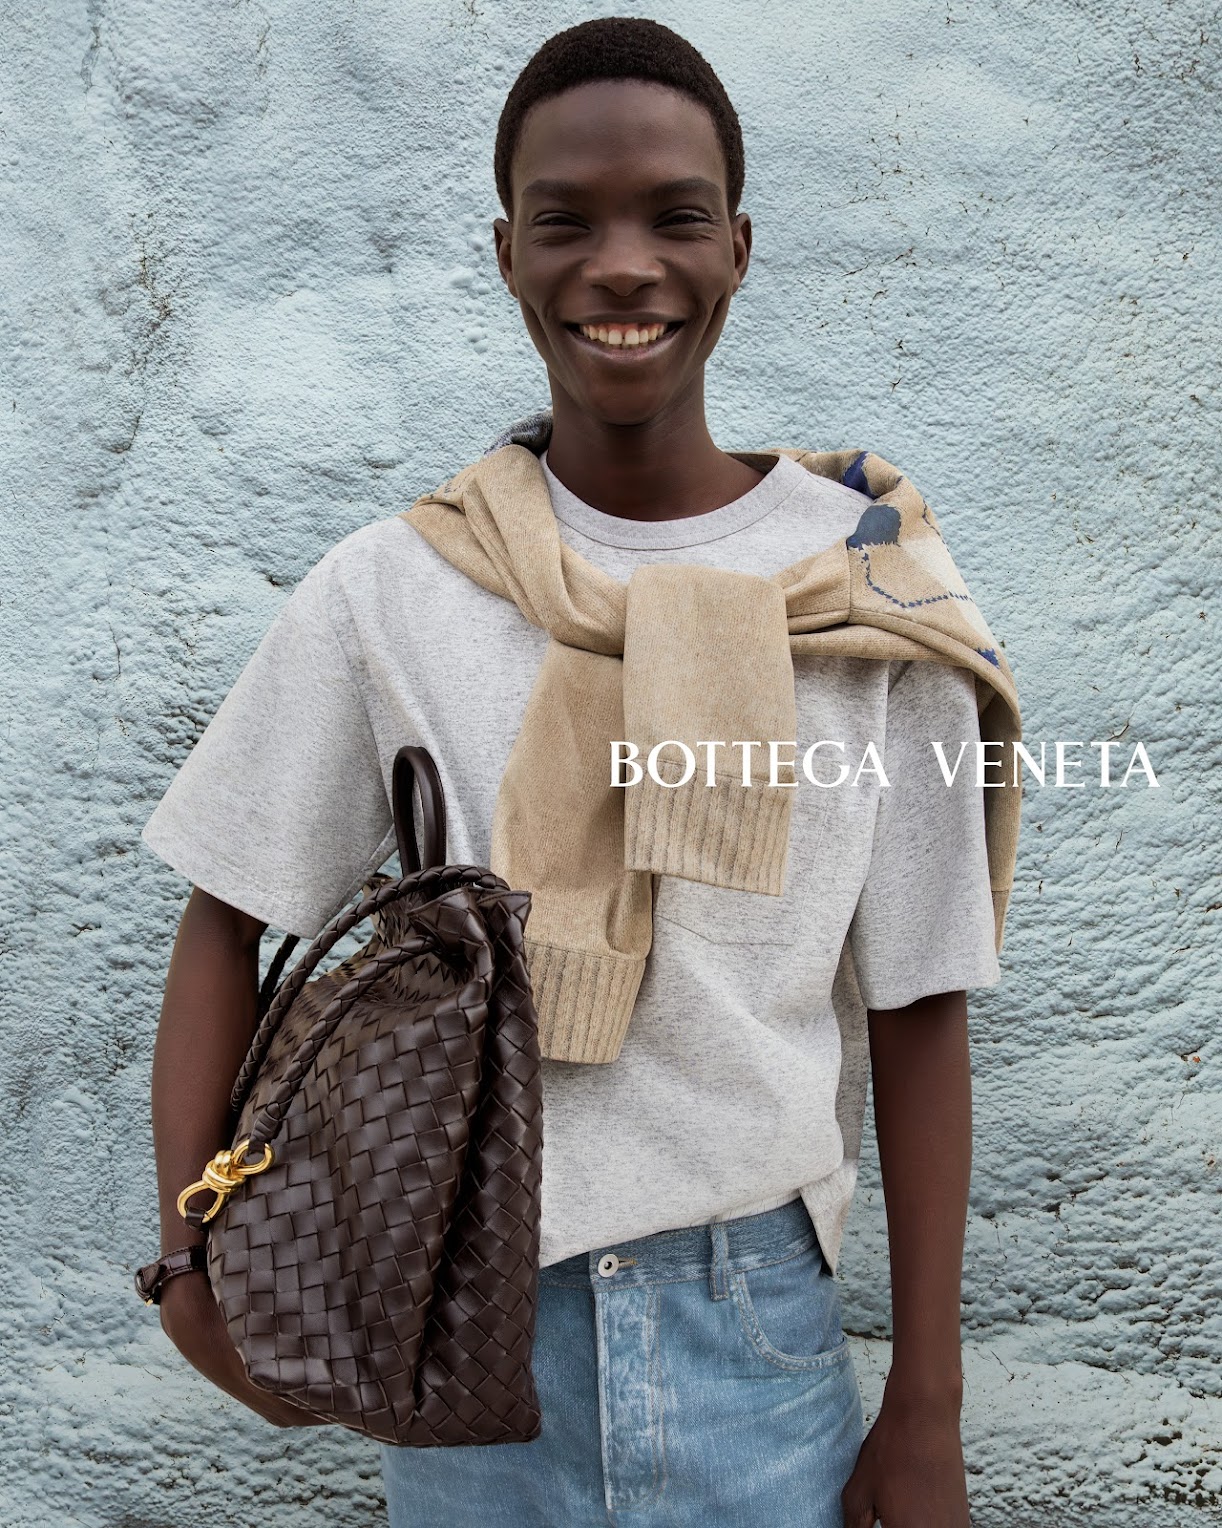 Bottega Veneta, Brands of the World™